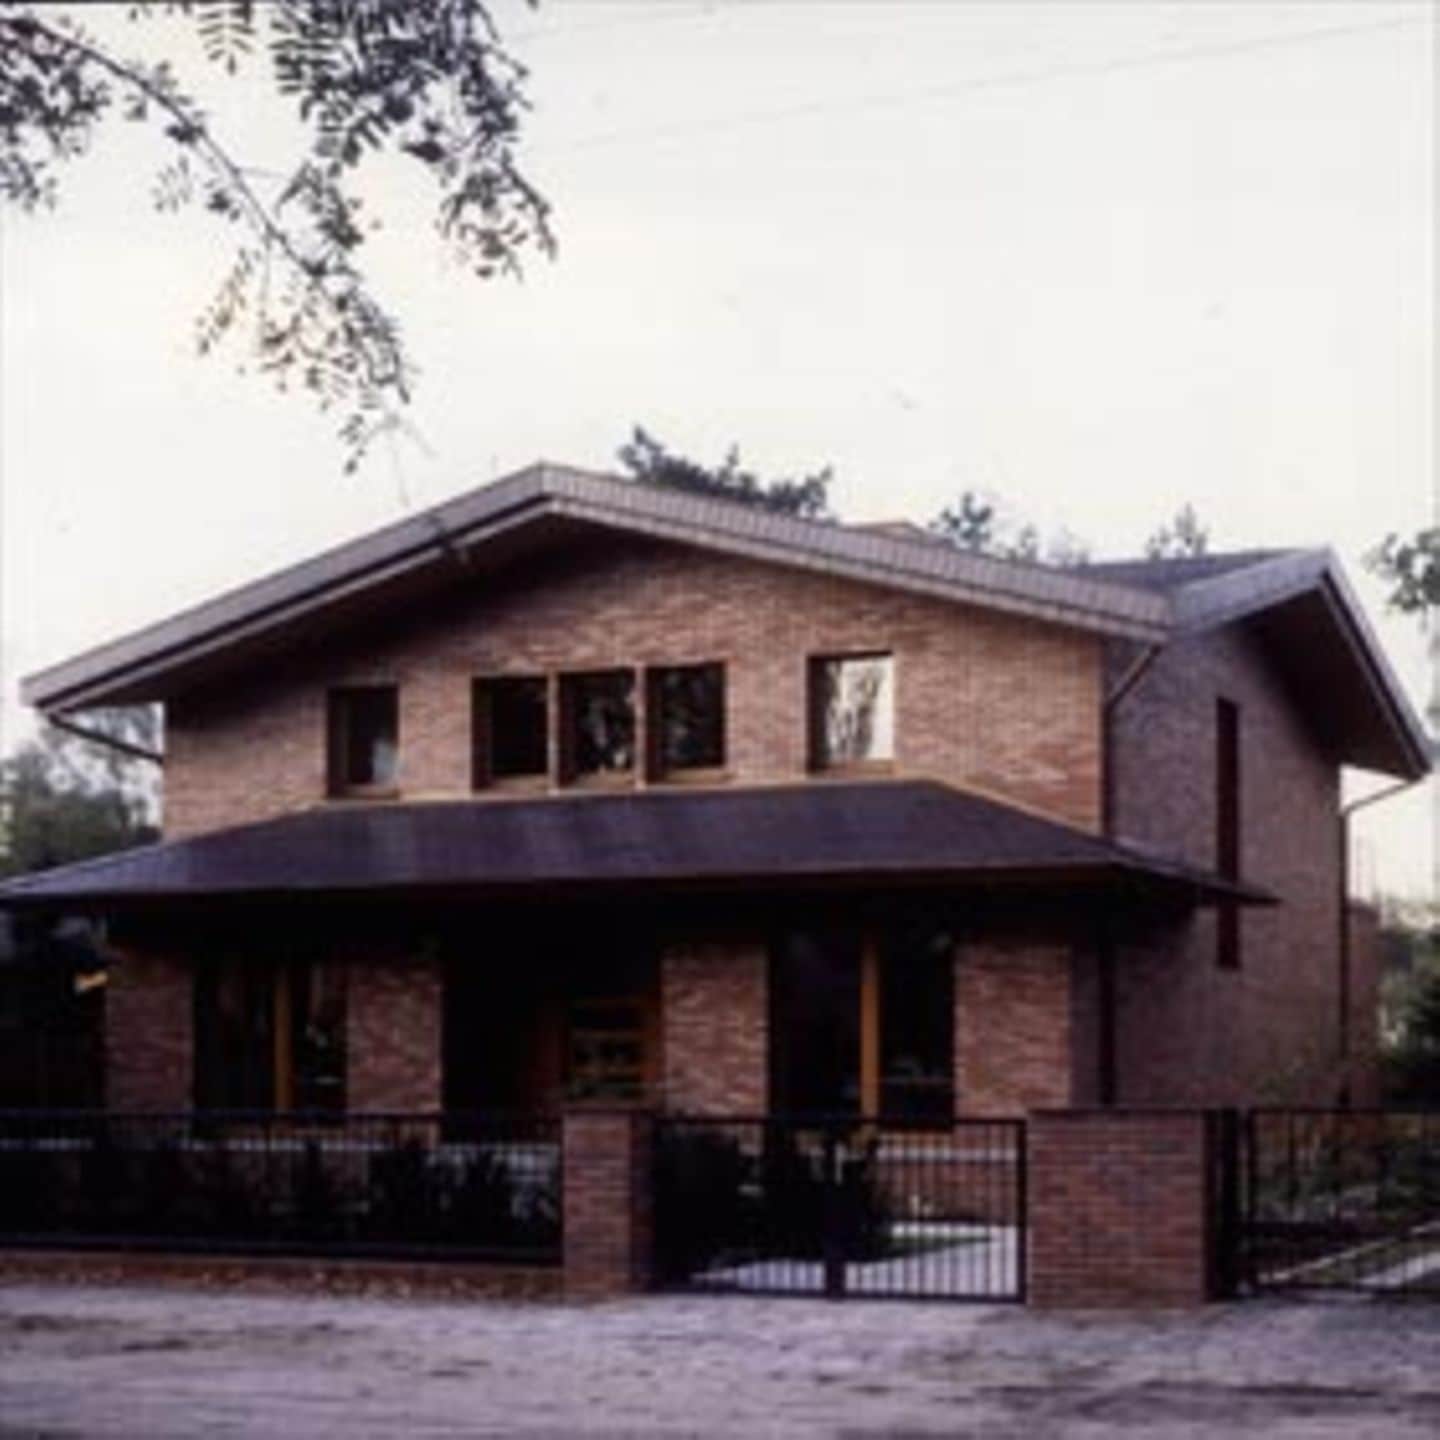 Ein großes Haus in Mahlsdorf entwarfen Tophof und Hemprich als neuen Typus der Vorstadtvilla. Mit Klinkerfassade, Kreuzgiebel und herabgezogenem Dach ähnelt es Prärie-Häusern eines Frank Lloyd Wright.